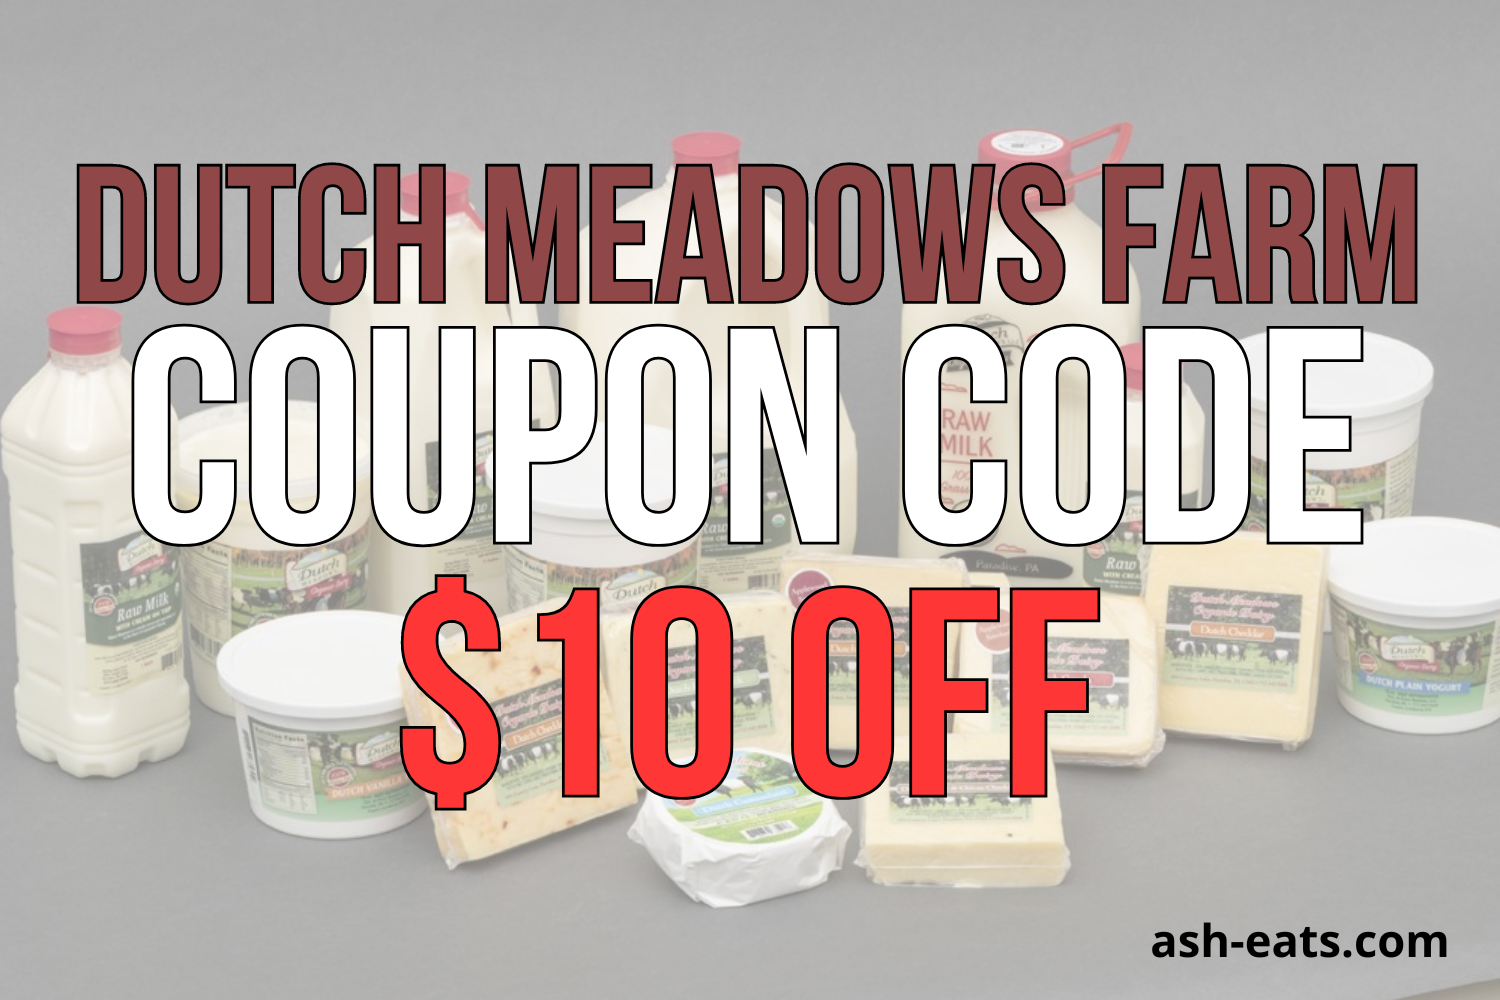 dutch meadows farm coupon code